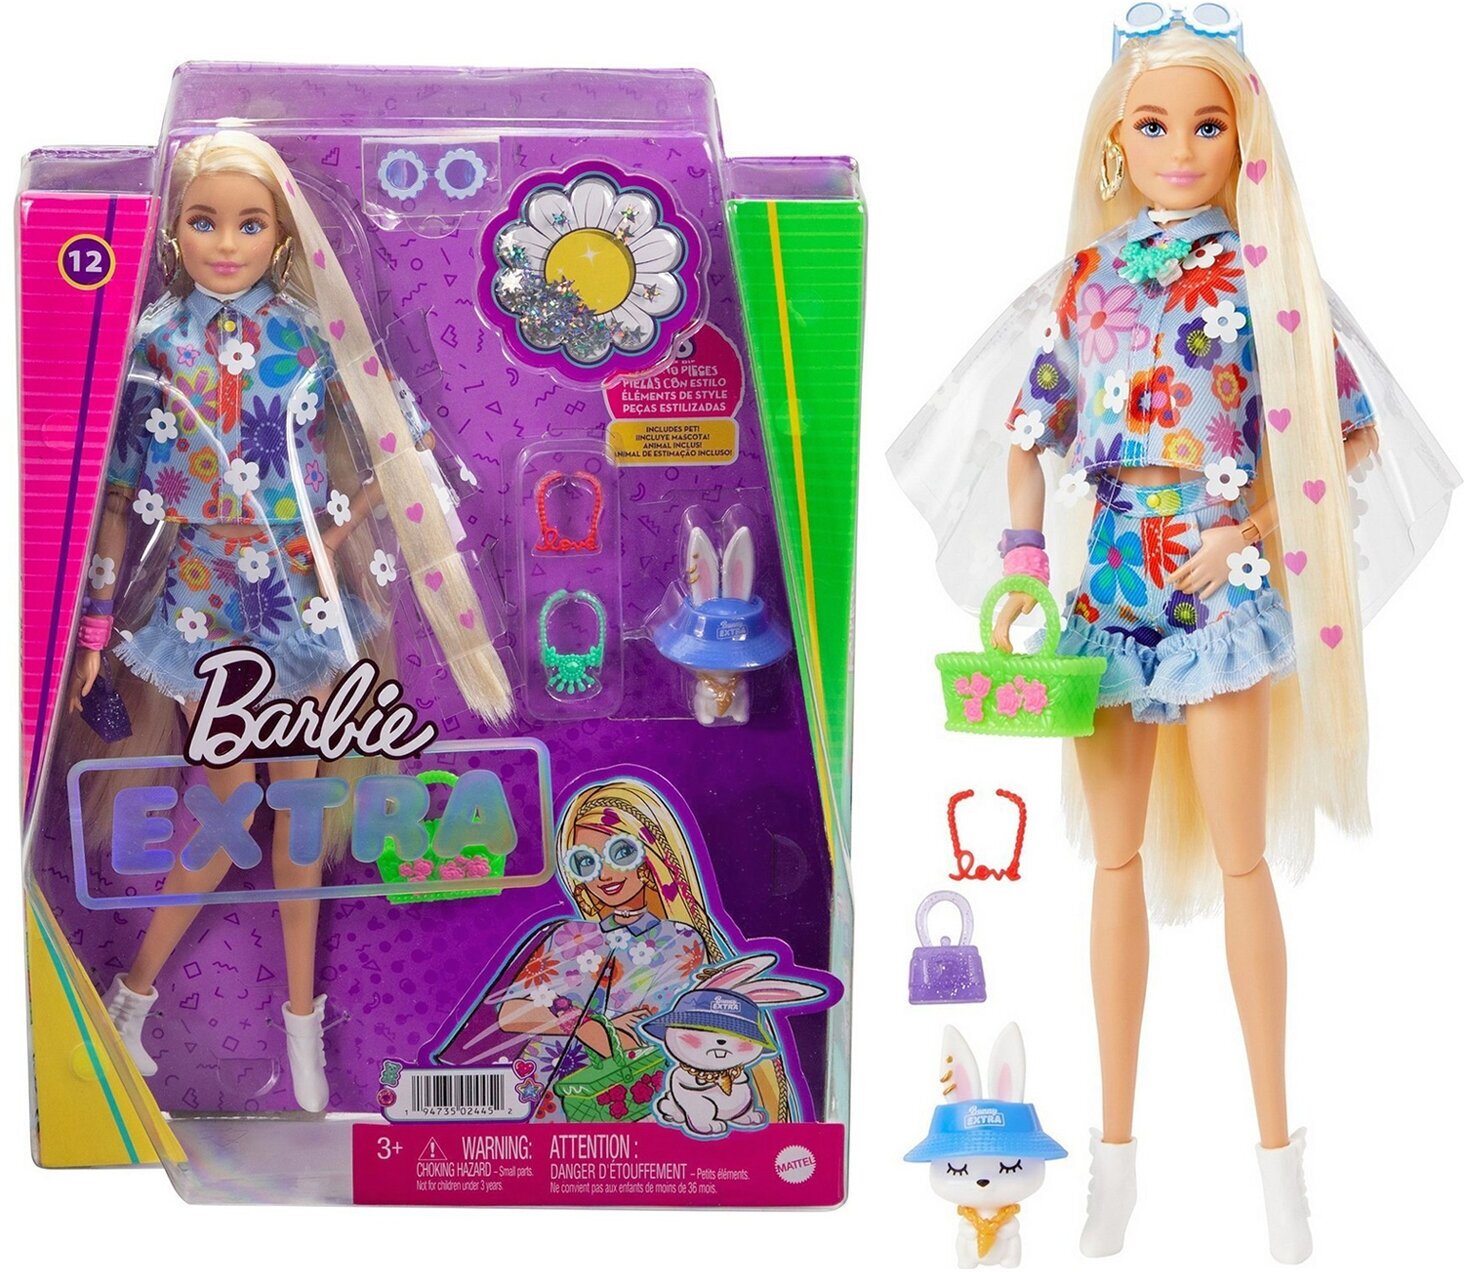 Barbie Кукла Экстра в одежде с цветочным принтом - фото №7